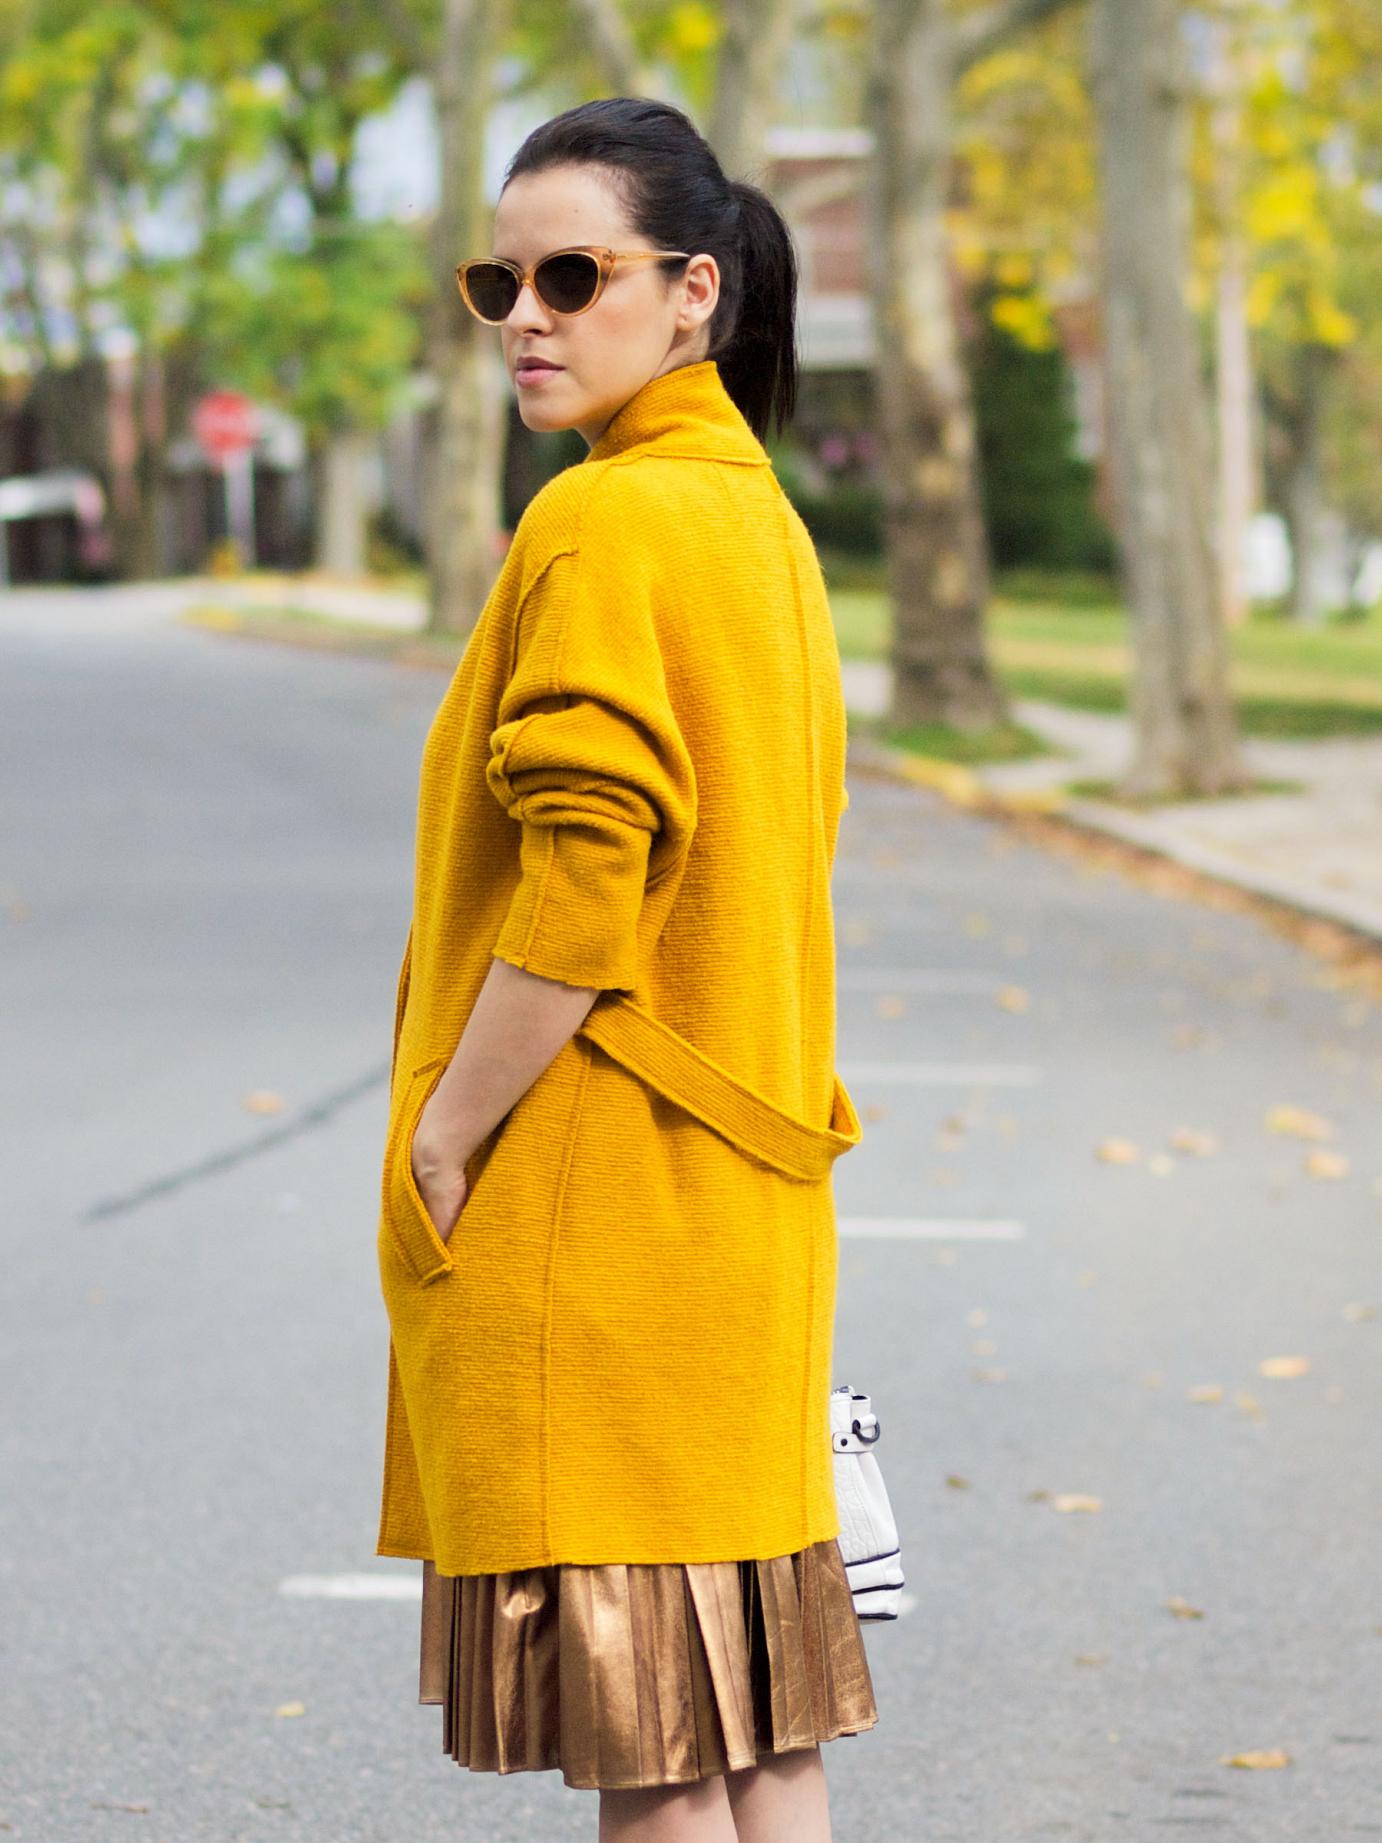 желтое пальто с чем носить фото женское